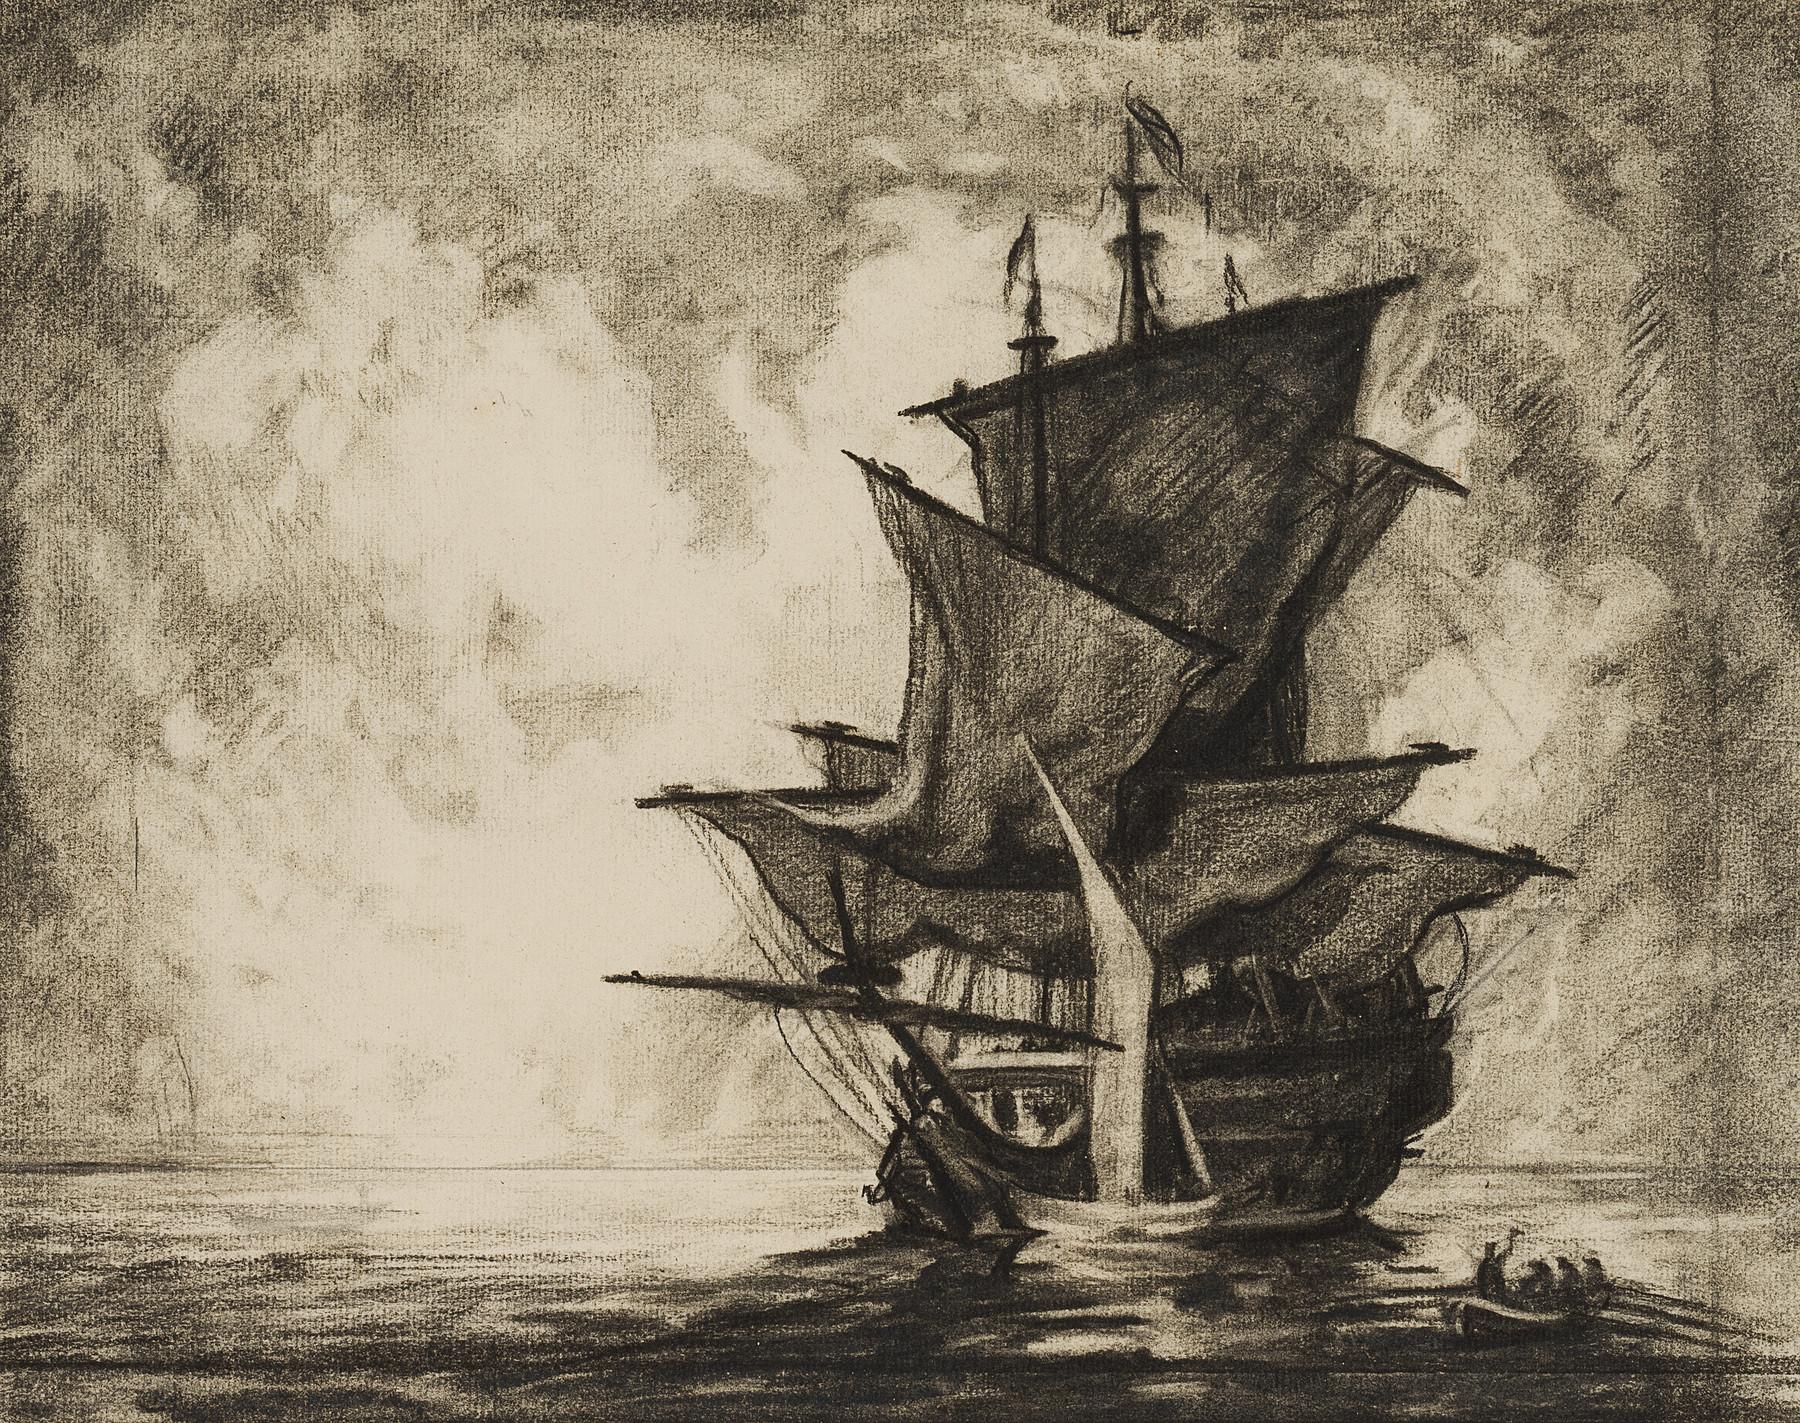 Anchored sailing ship